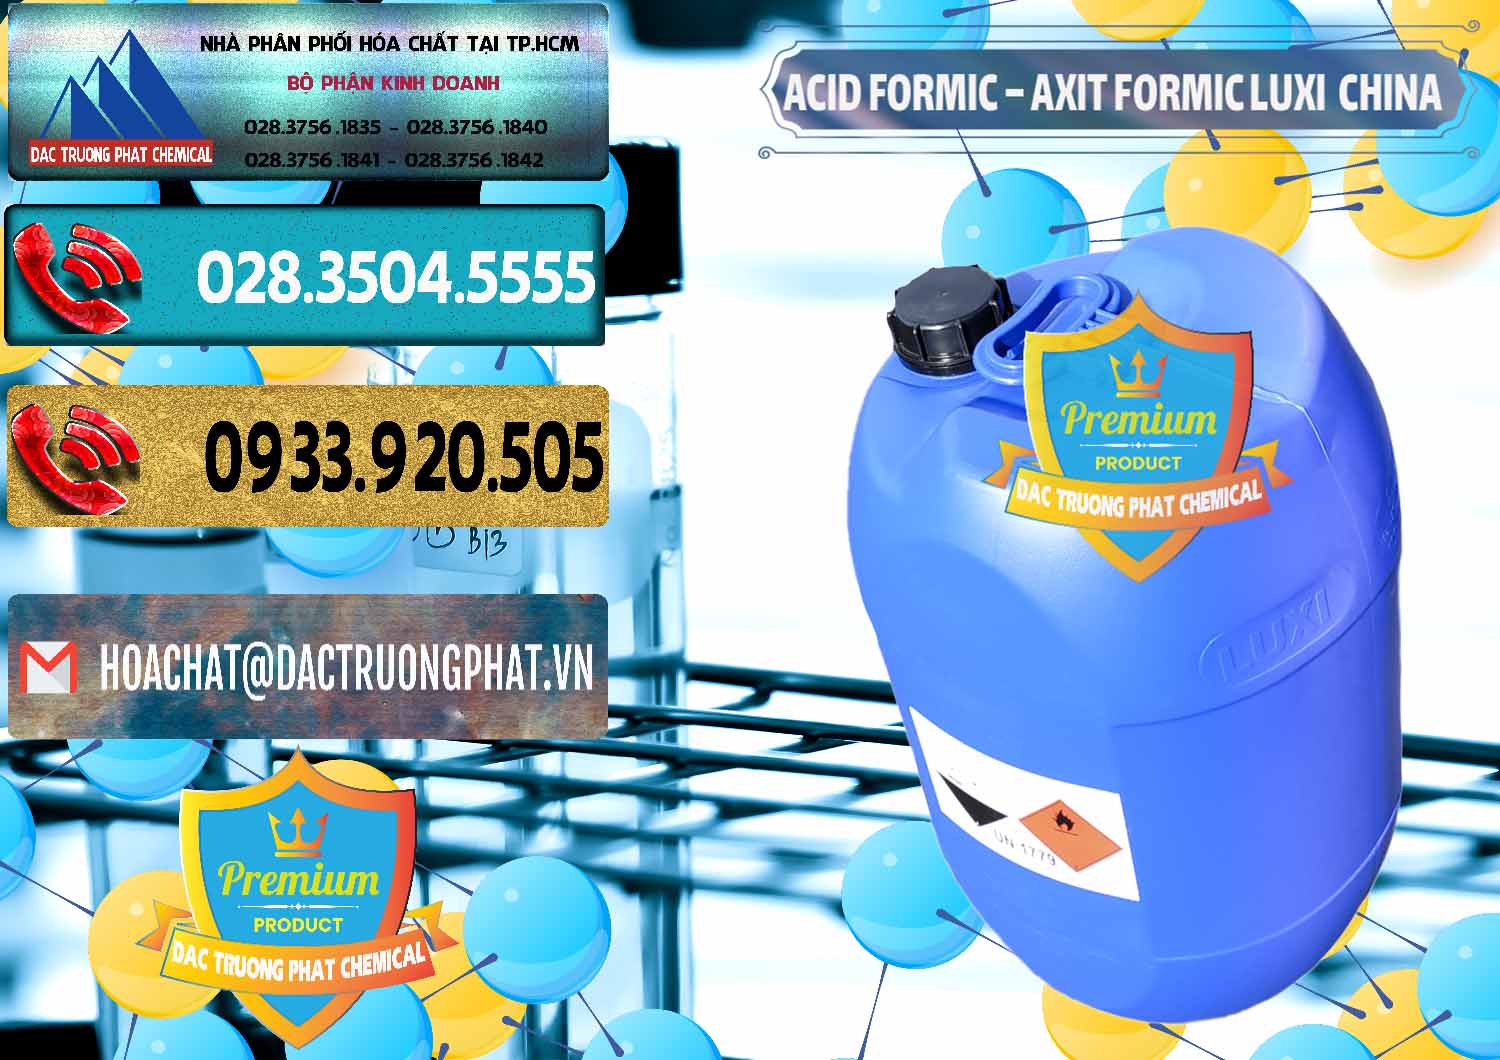 Cty chuyên kinh doanh _ bán Acid Formic - Axit Formic Luxi Trung Quốc China - 0029 - Đơn vị cung cấp ( bán ) hóa chất tại TP.HCM - hoachatdetnhuom.com